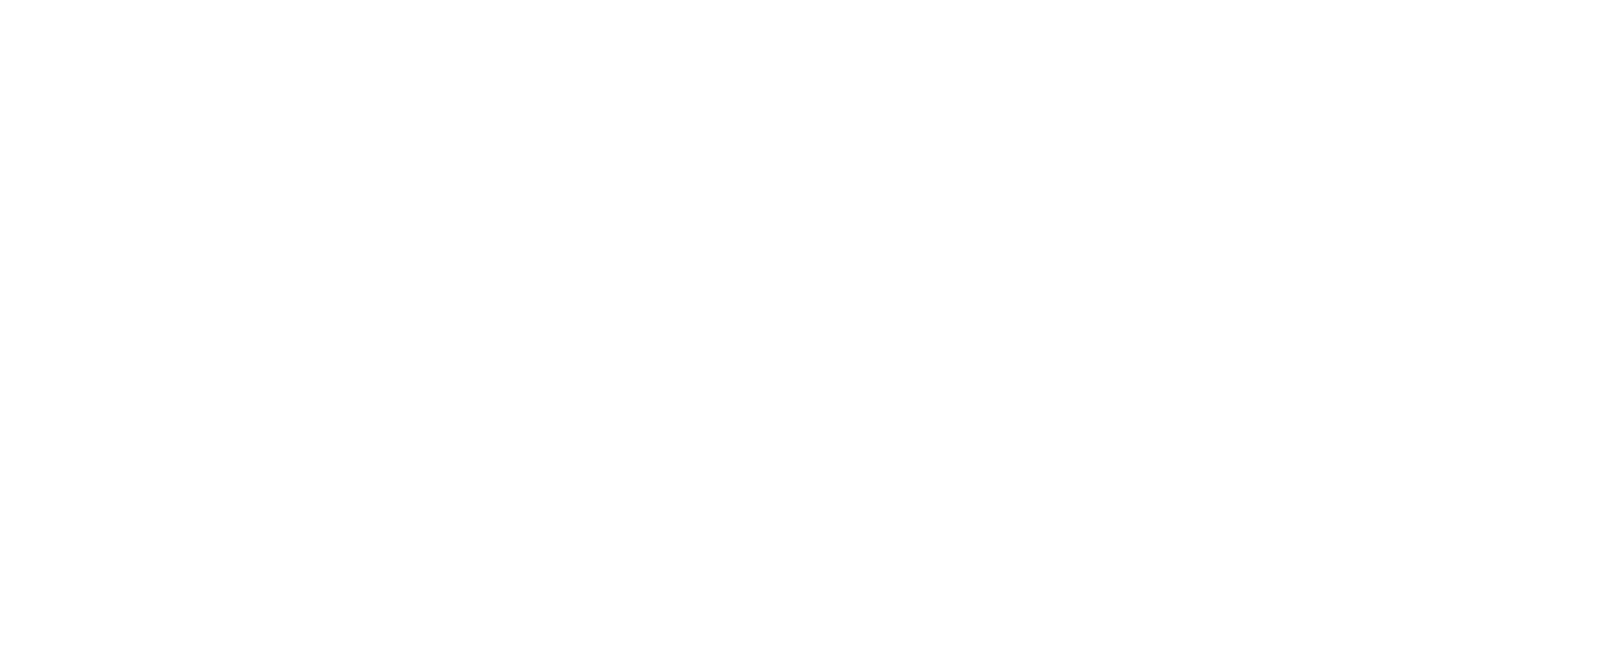 the chedi